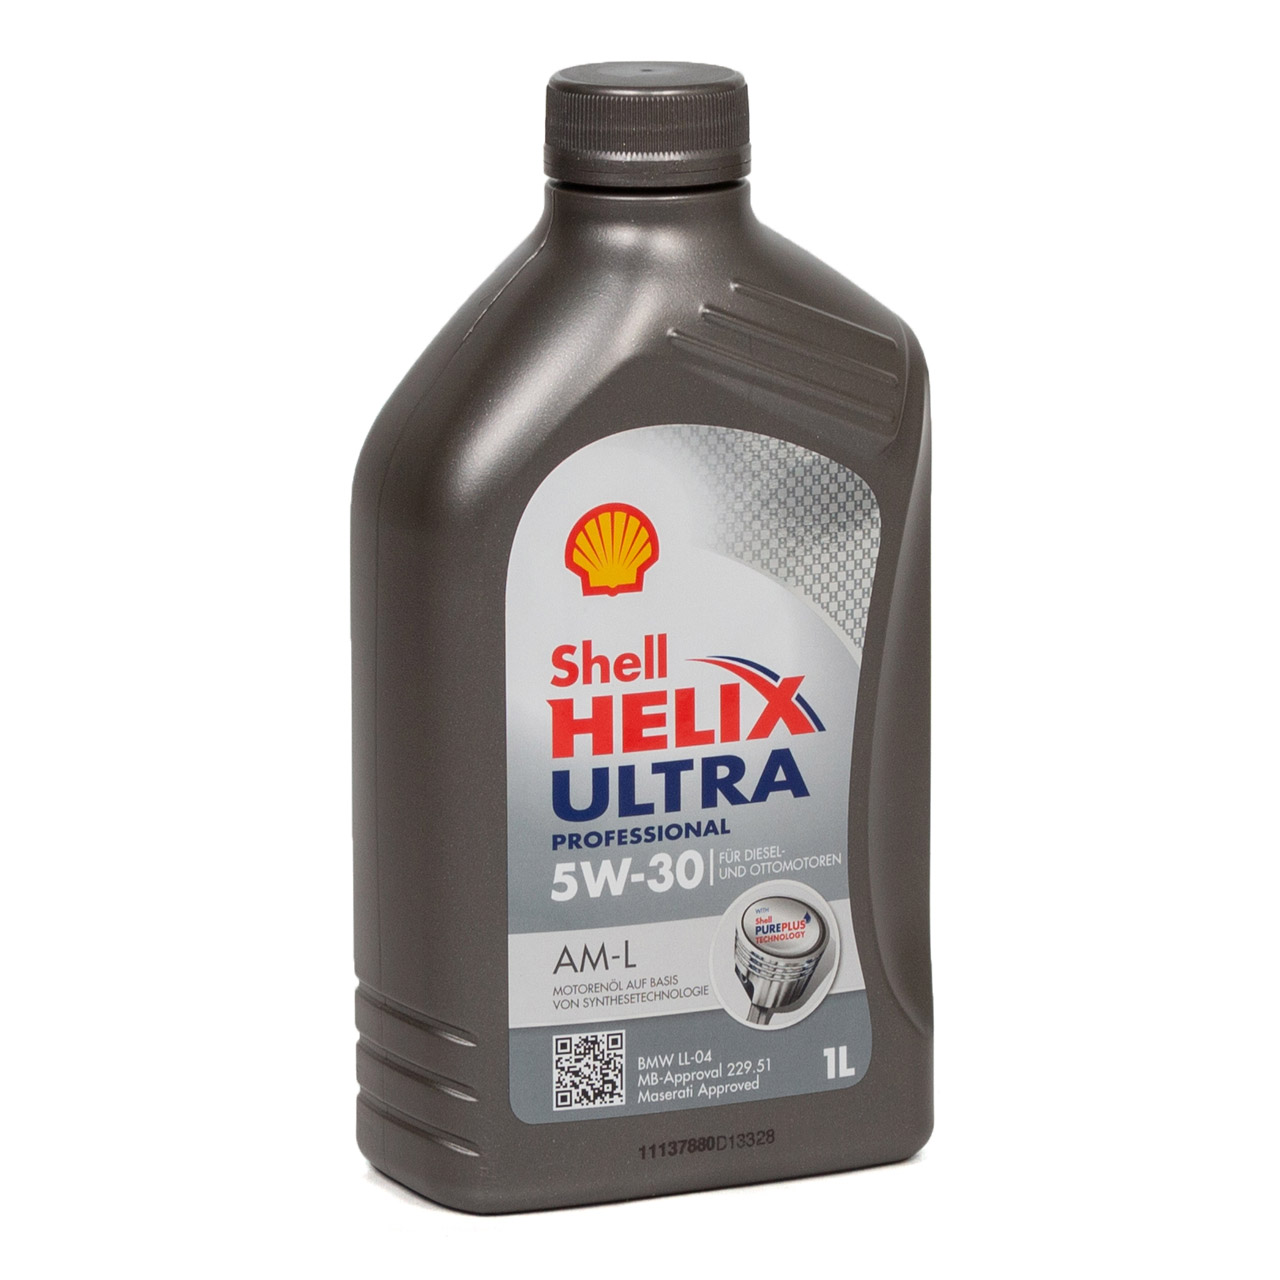 7L 7 Liter SHELL Motoröl Öl HELIX ULTRA Professional AM-L 5W30 für BMW LL-04